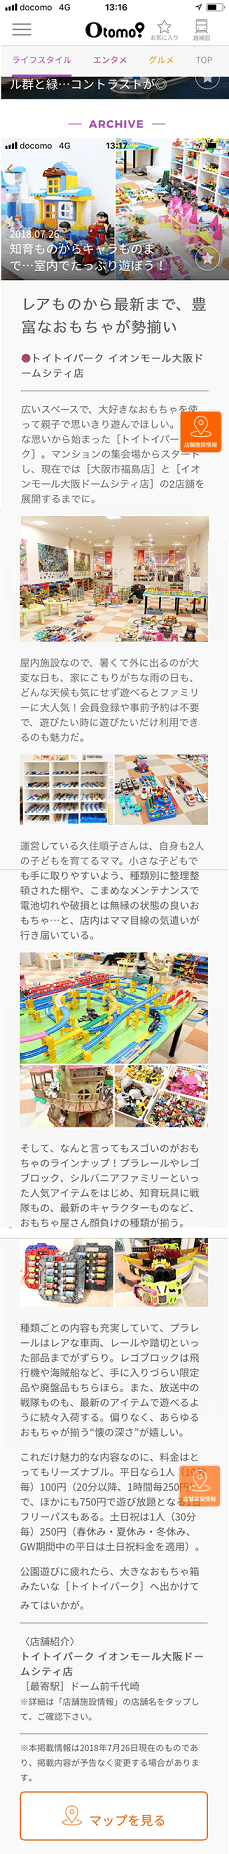 大阪地下鉄アプリ「Otomo!」に掲載